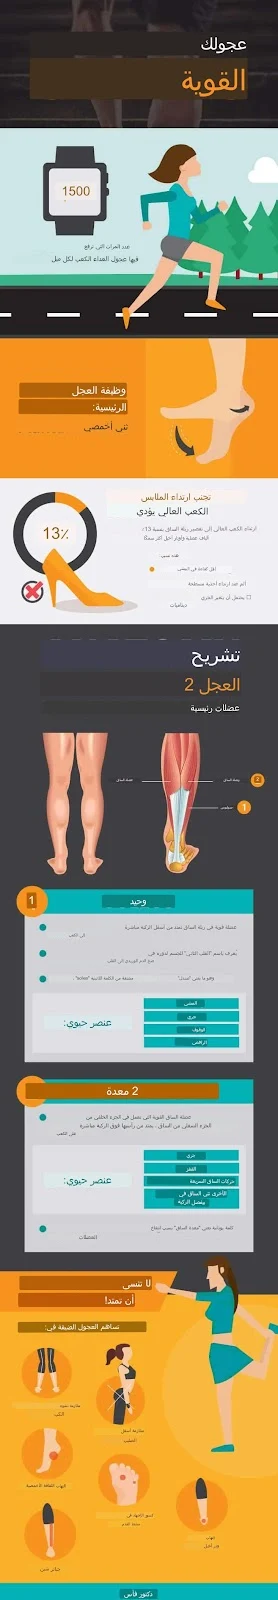 تمارين وحيل ربلة الساق للوقاية من الألم والإصابة واختلال التوازن العضلي